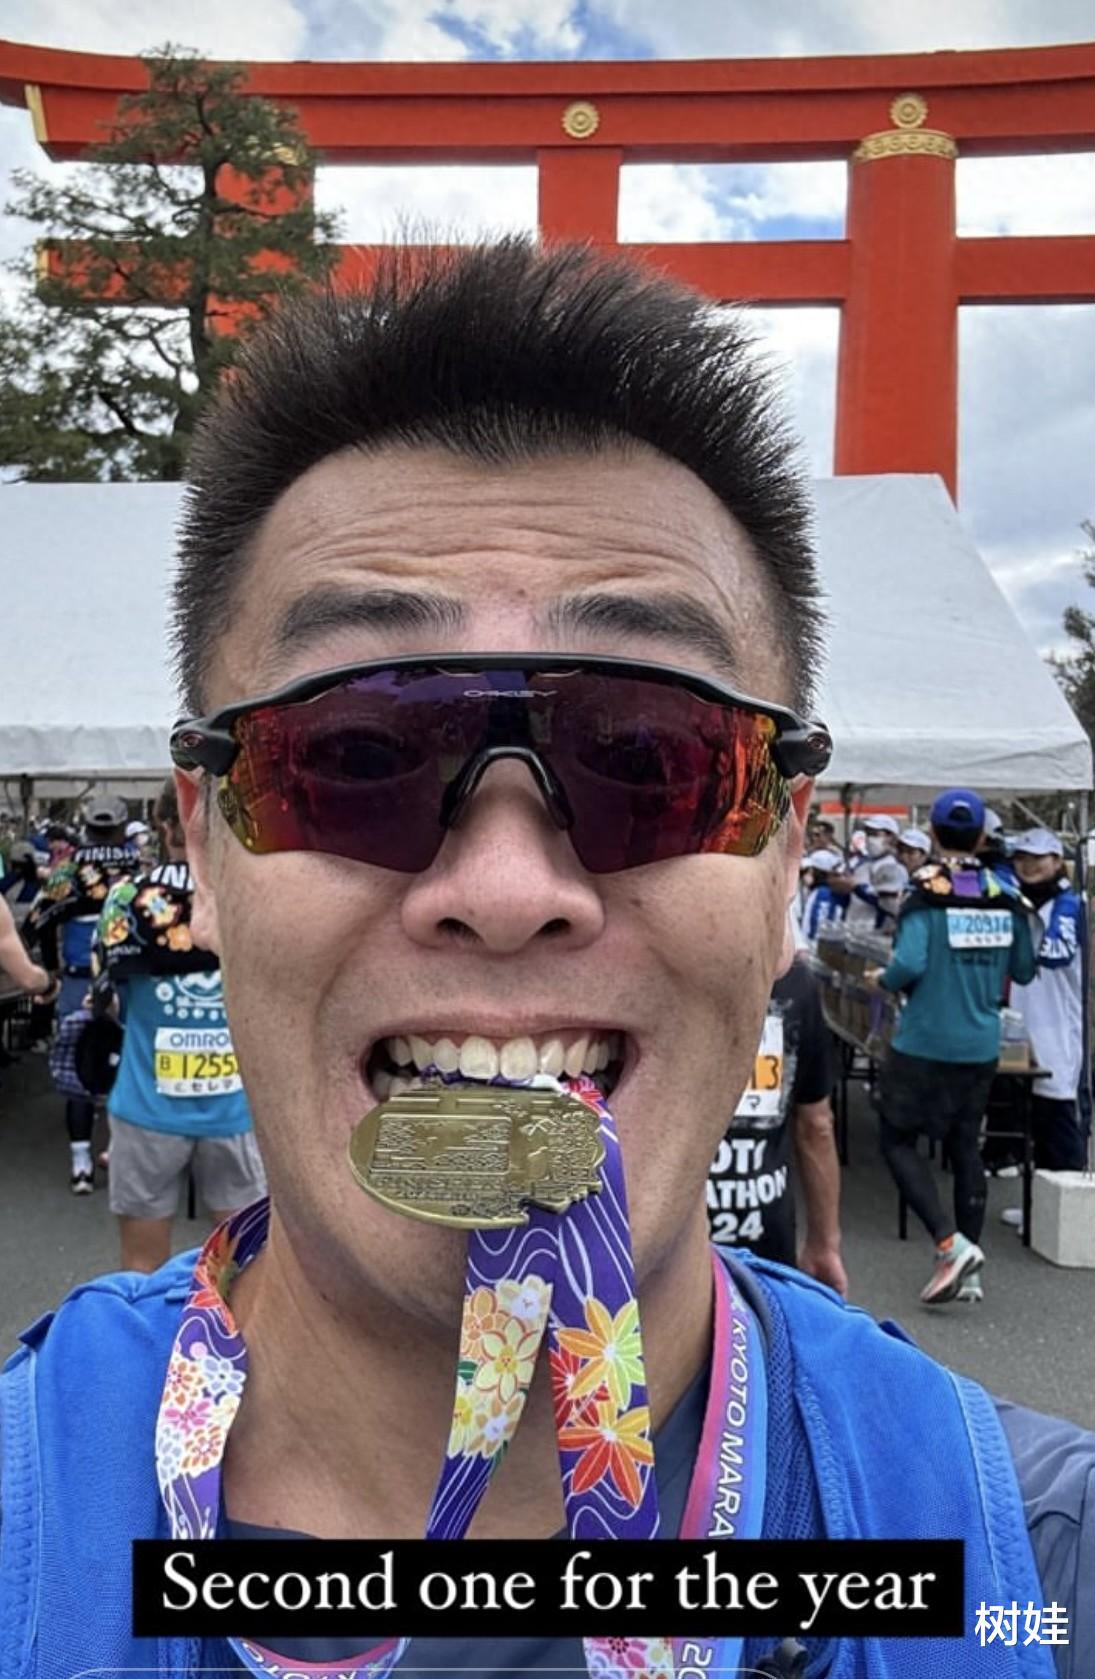 刘鸣炜参加日本马拉松赛，晒咬奖牌自拍照，一脸兴奋状态真实自然